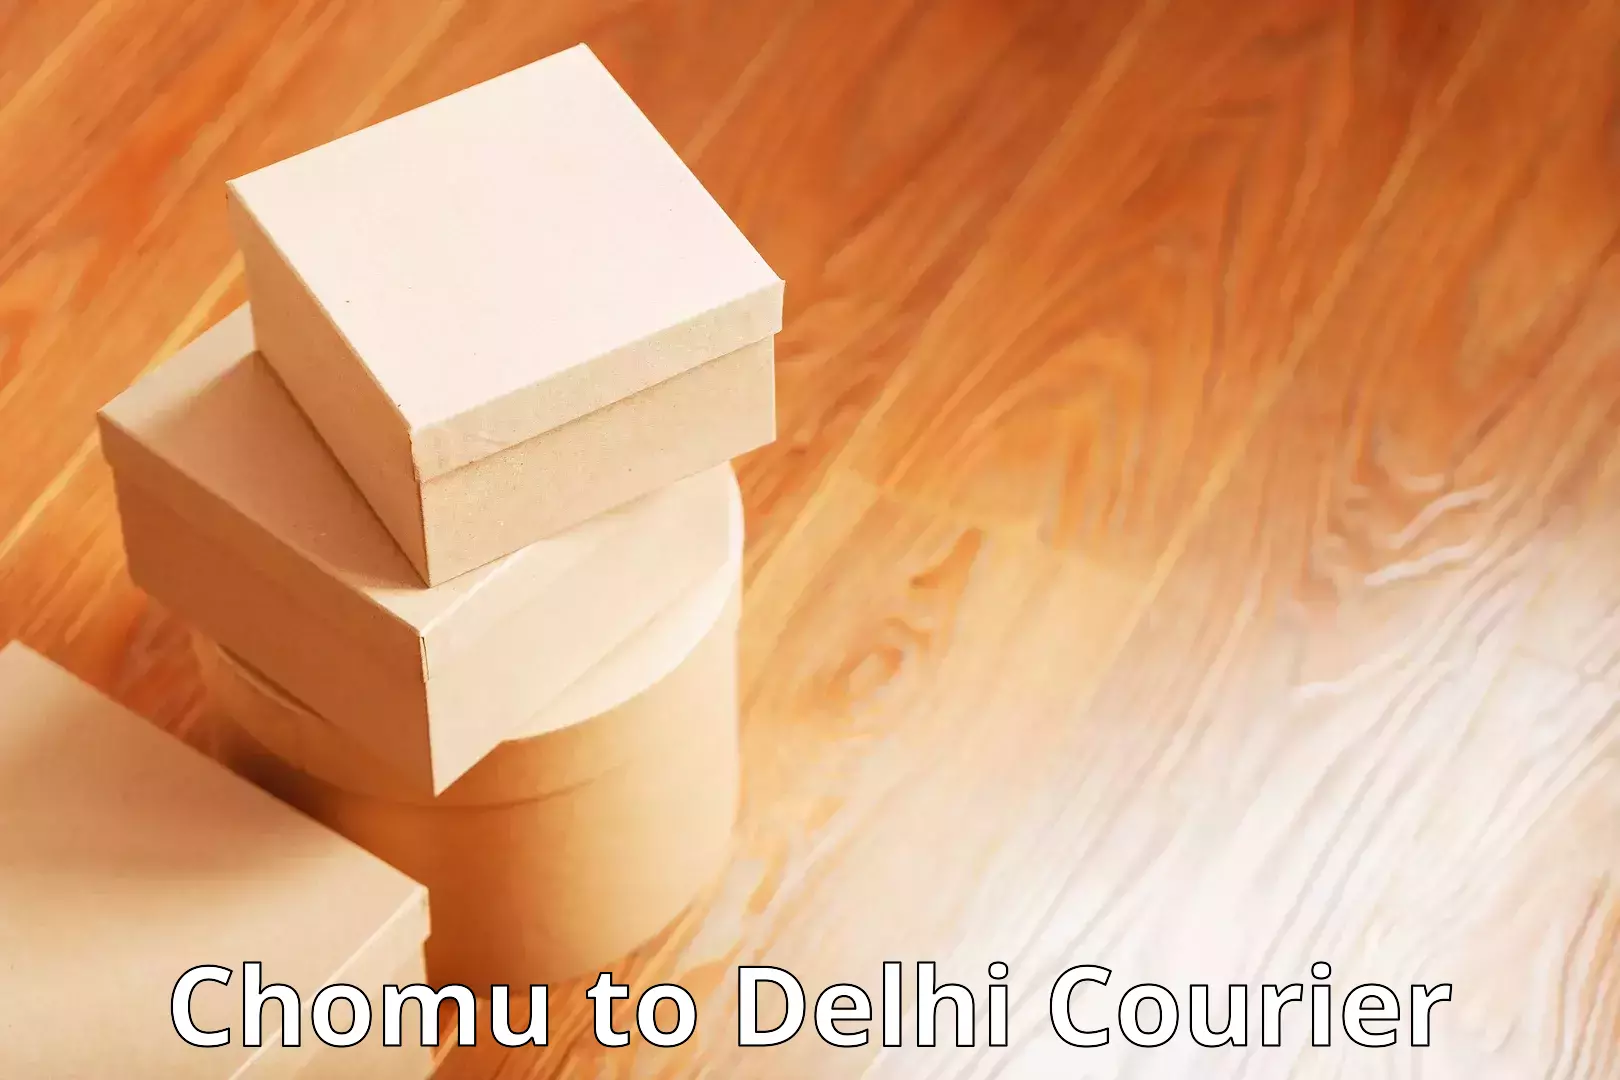 Door-to-door freight service Chomu to Delhi